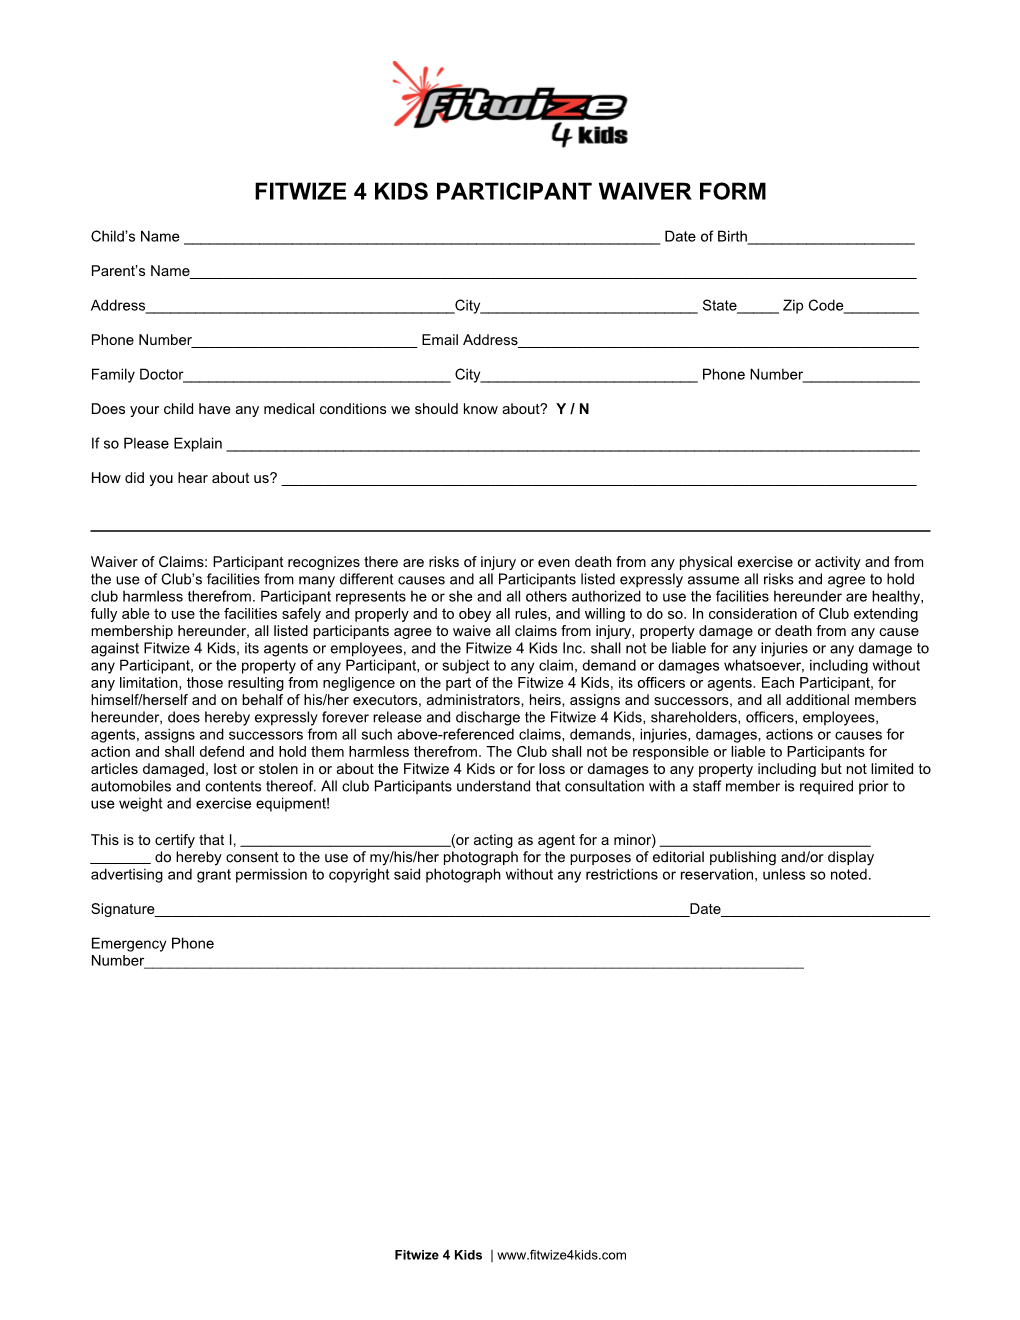 Fitwize 4 Kids Participant Waiver Form